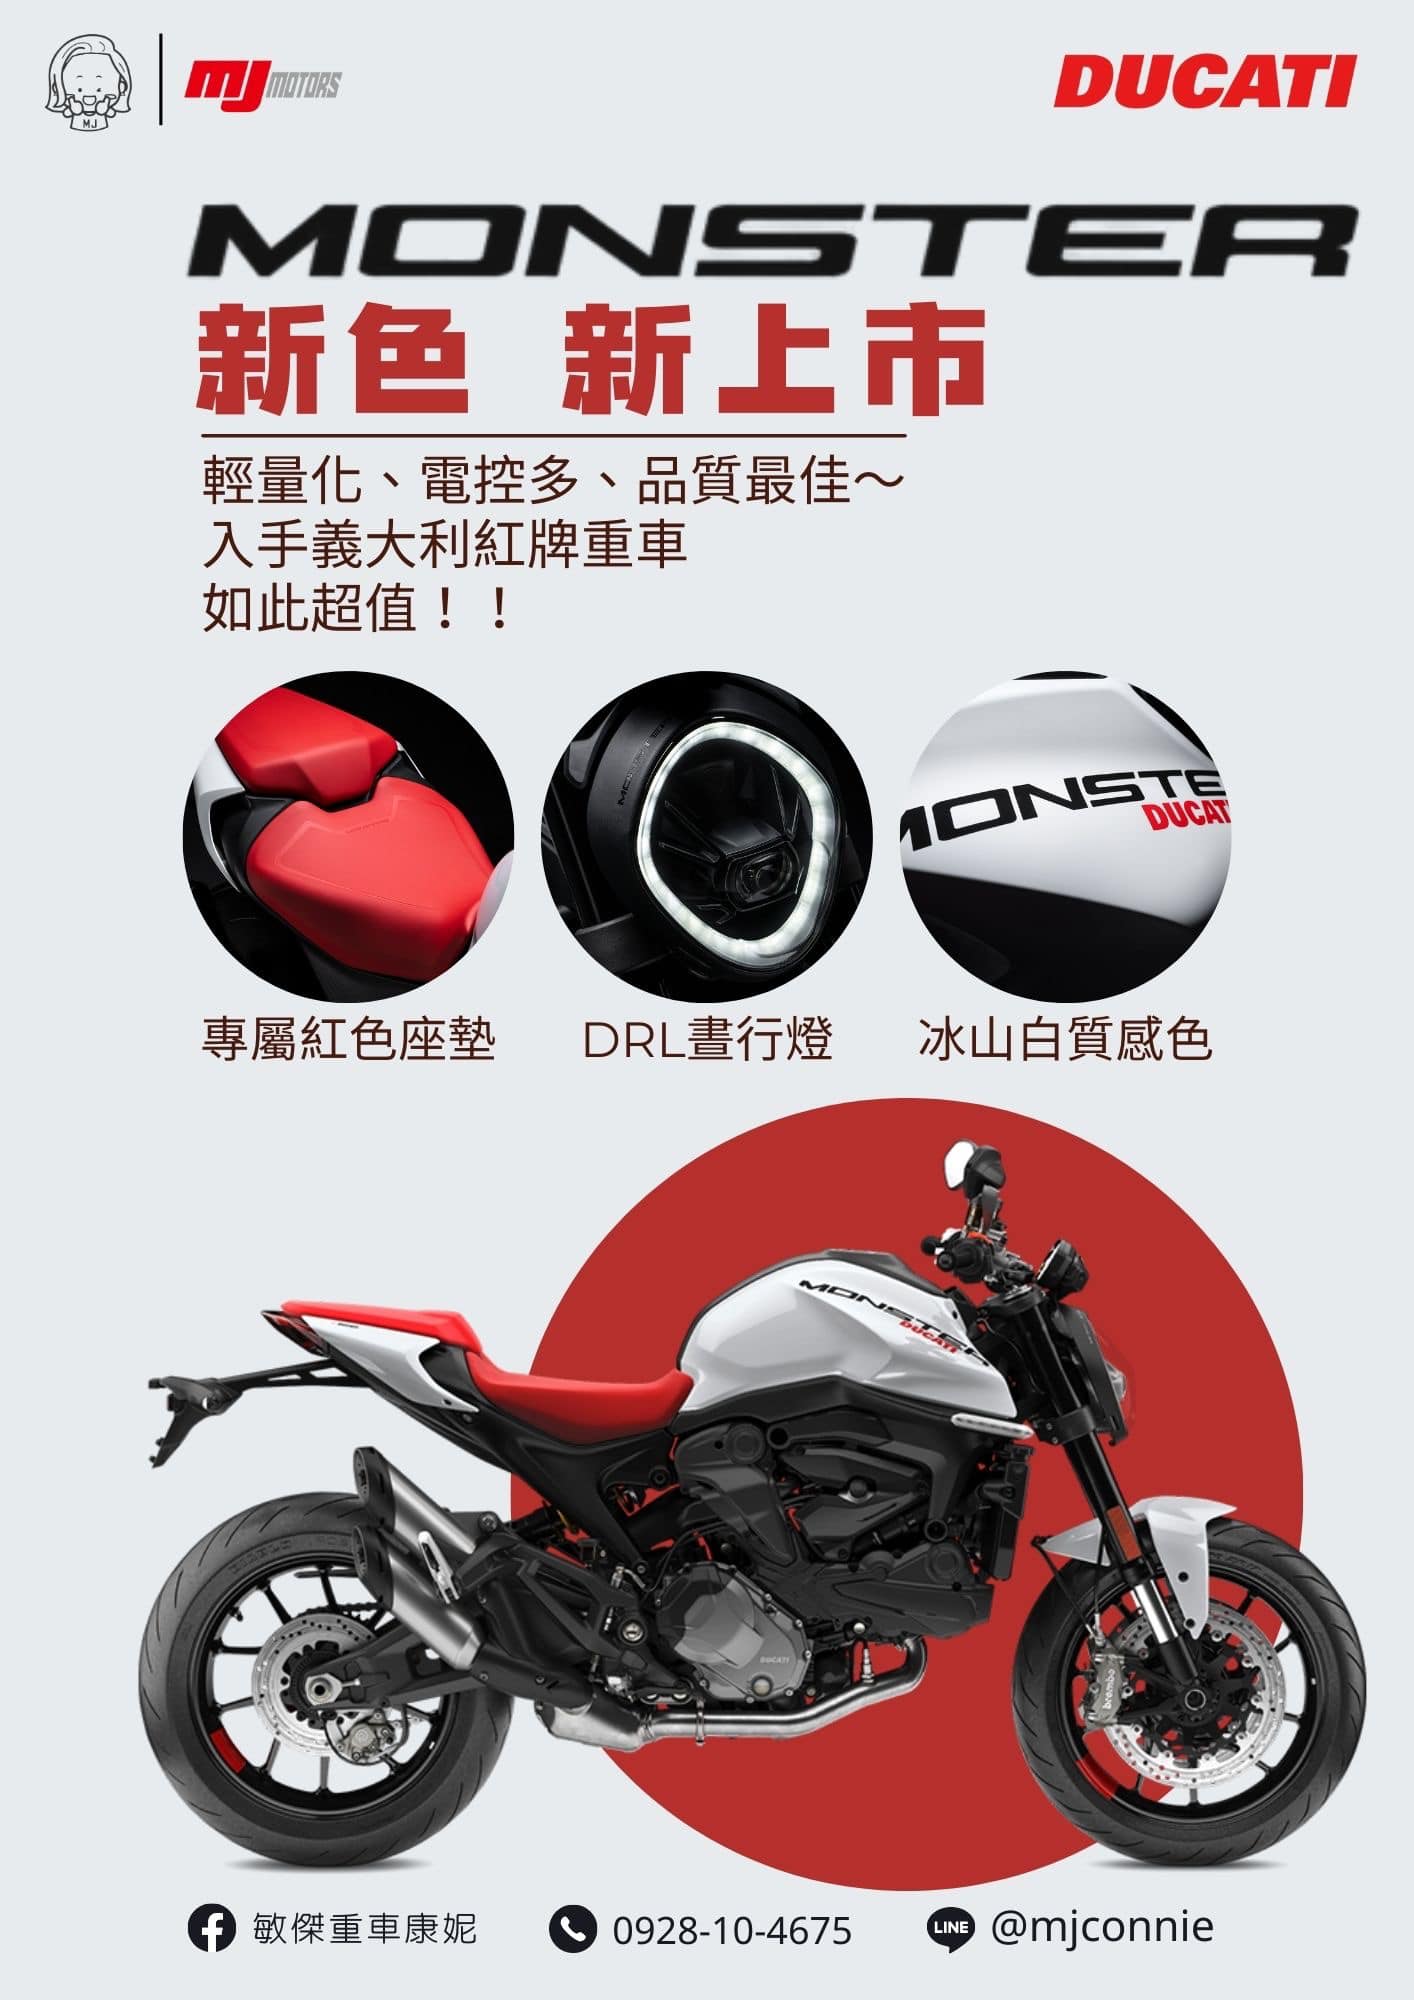 【敏傑車業資深銷售專員 康妮 Connie】Ducati Monster - 「Webike-摩托車市」 『敏傑康妮』Ducati Monster 937 最夯的靈活車款!!正義大利生產~最時尚的車型 74.8萬元